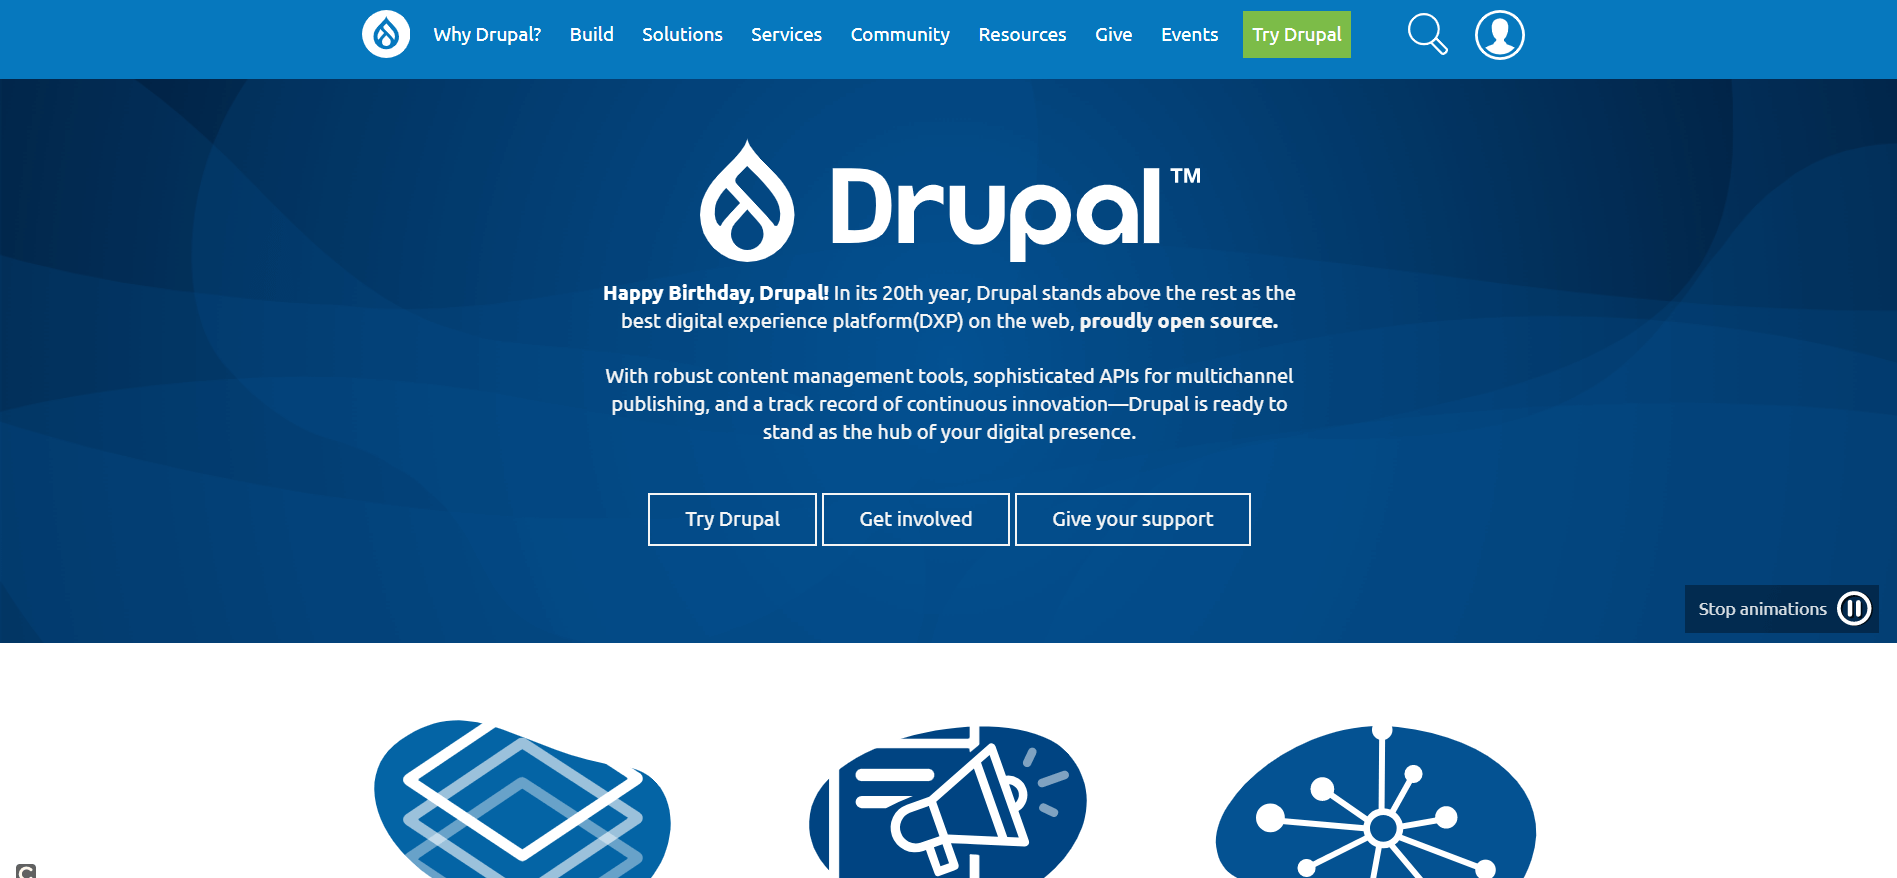 La pagina iniziale del progetto Drupal in inglese